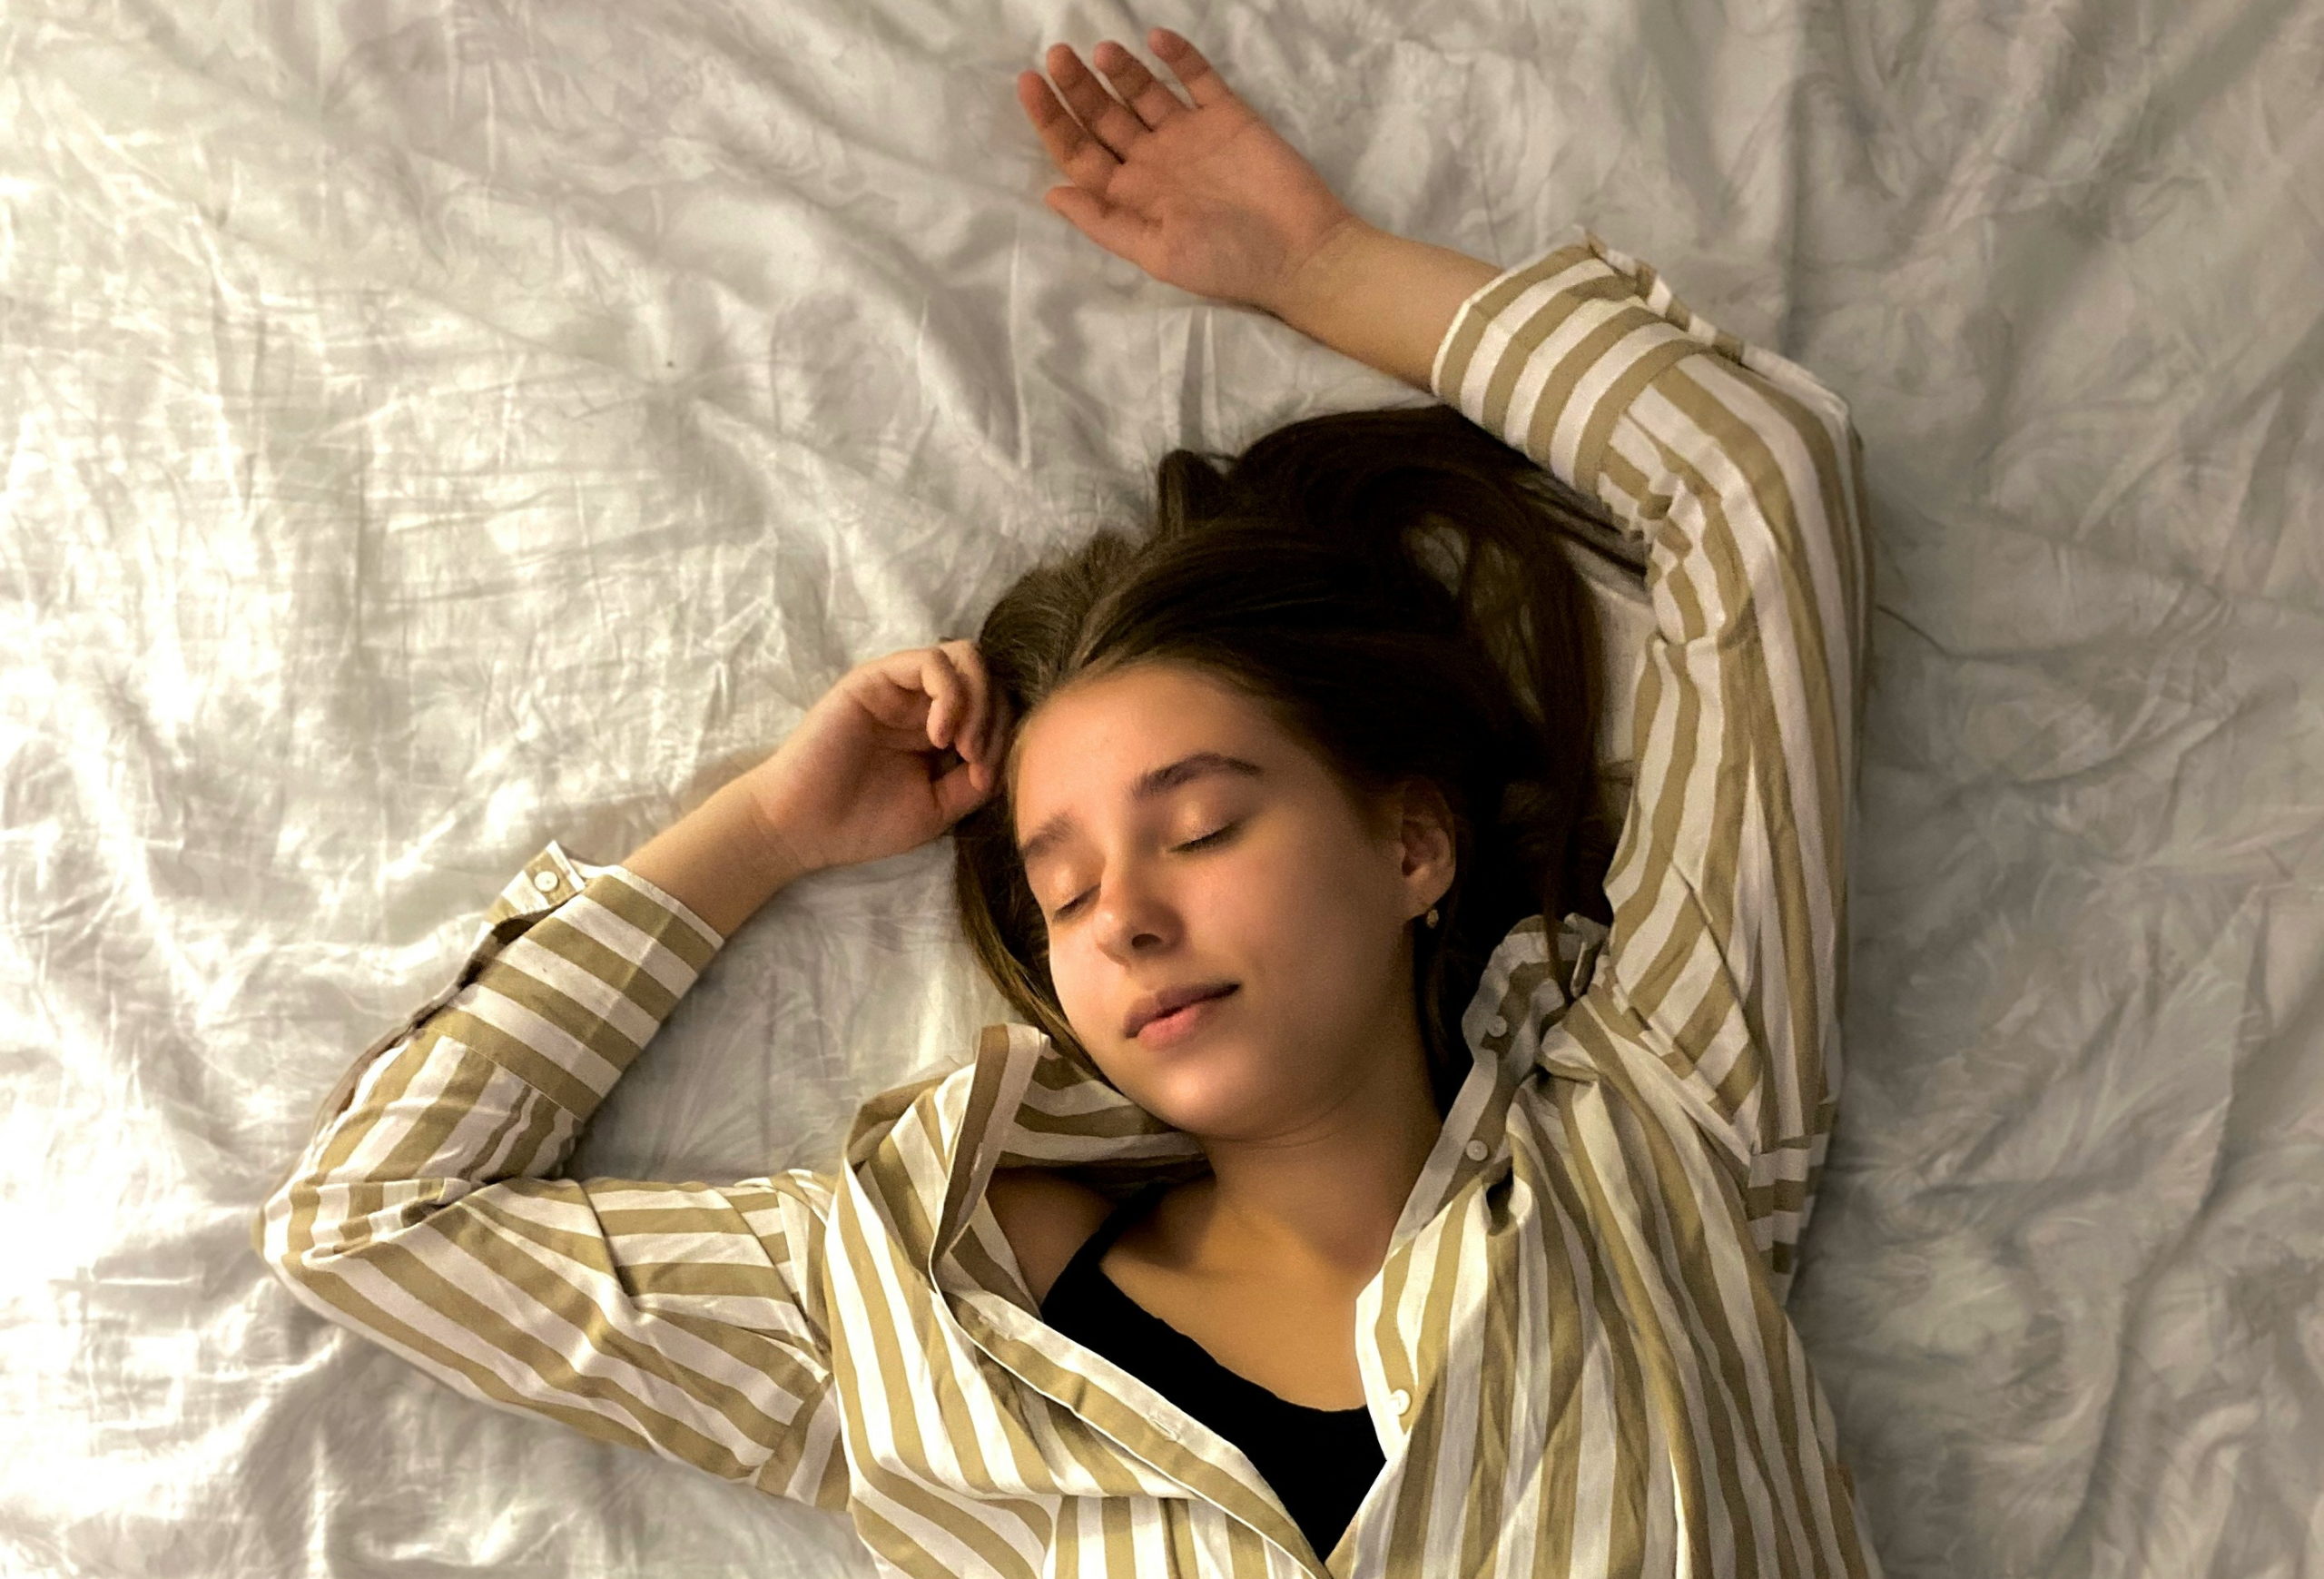 Ο Νο1 εχθρός του ύπνου σύμφωνα με γαστρεντερολόγο: Αποφύγετε αυτό το ρόφημα